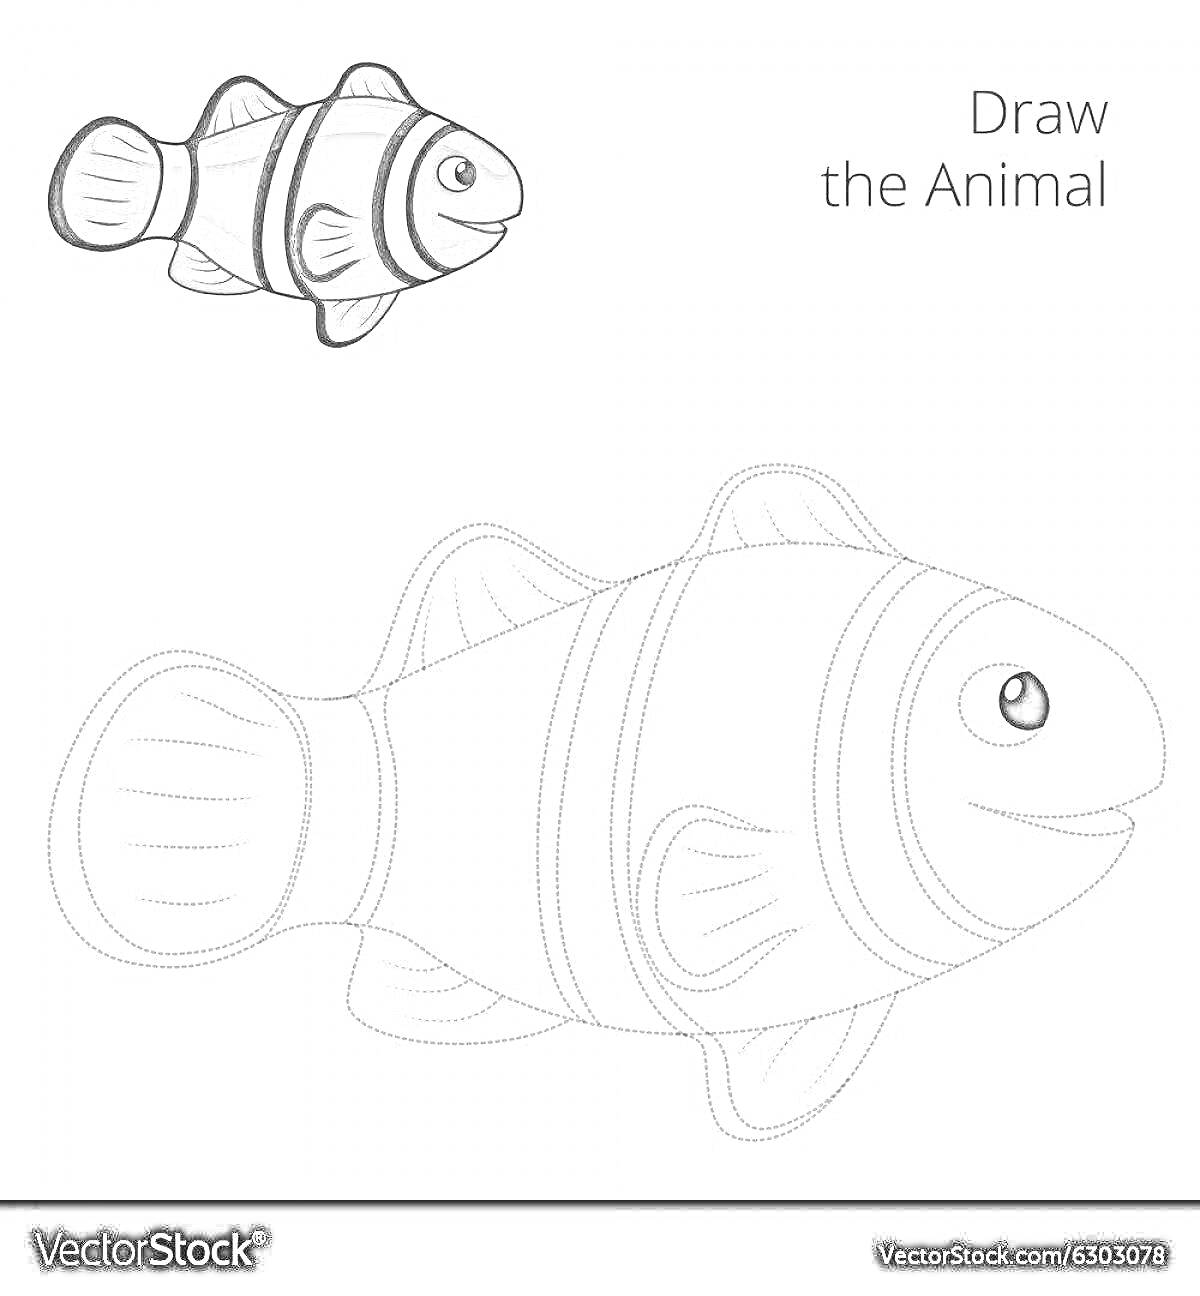 Раскраска Раскраска с изображением рыбы-клоуна, включающая черно-белый контур для раскрашивания и пример раскрашенной рыбы в верхнем левом углу, а также надпись 